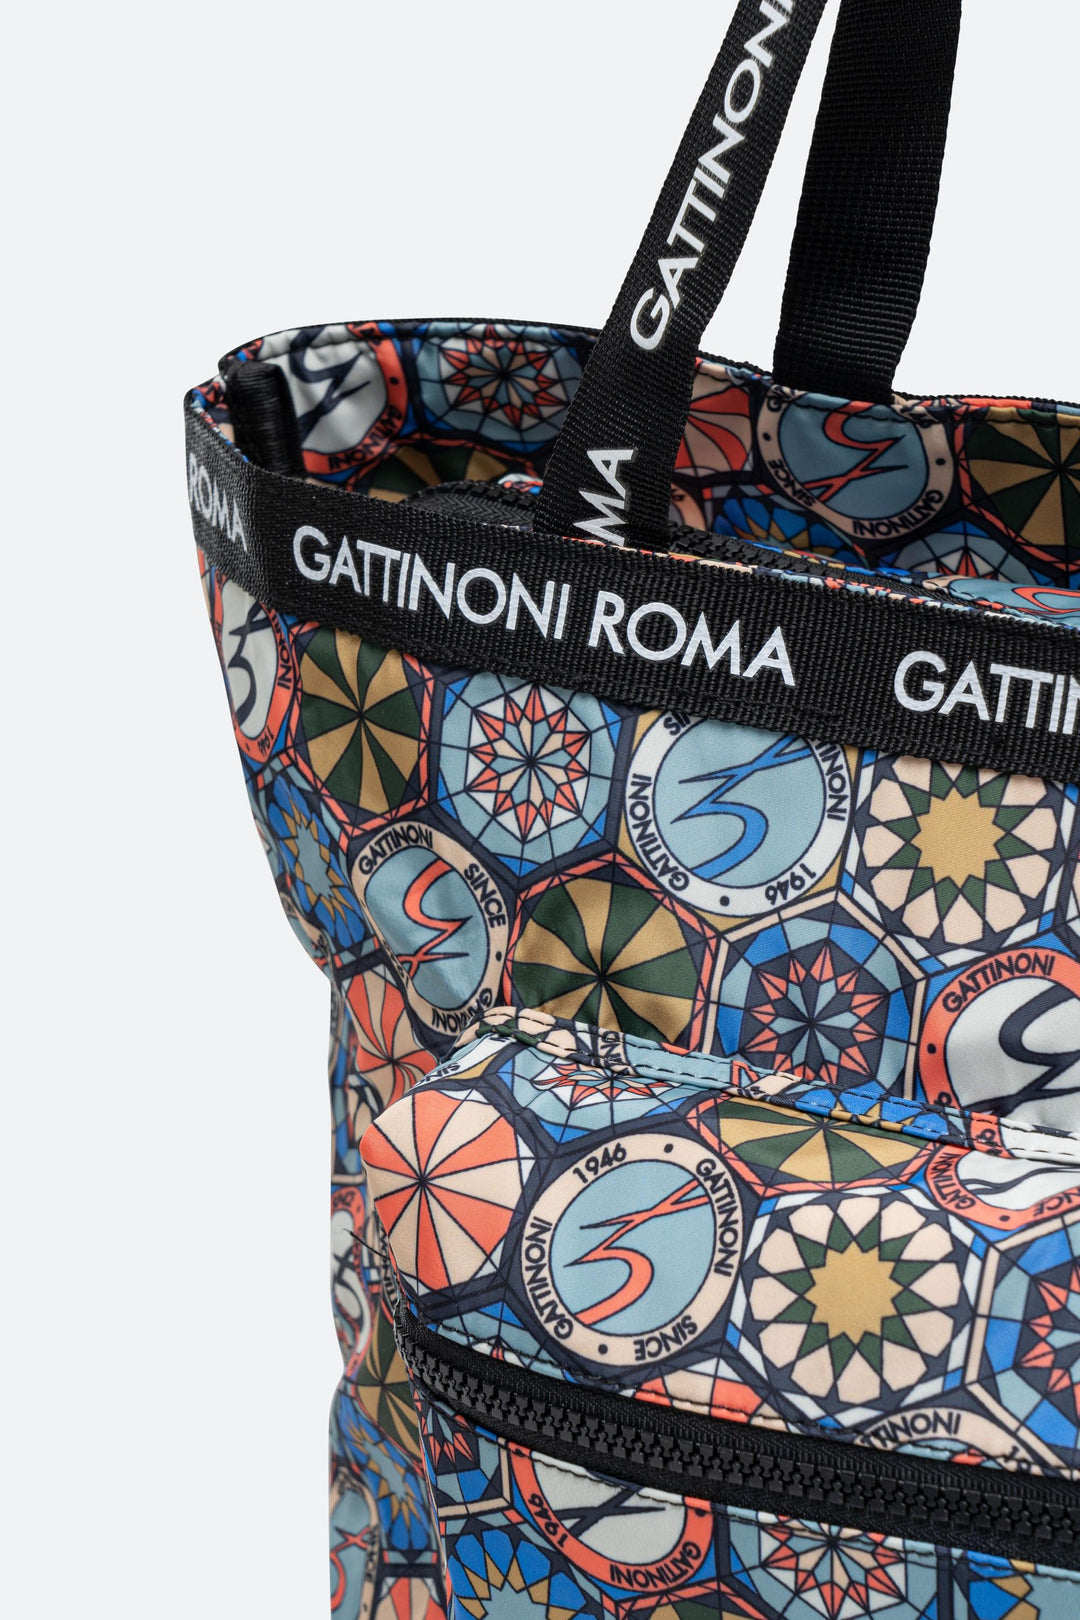 Shopping bag pieghevole Teodosia EasyChic – Gattinoni